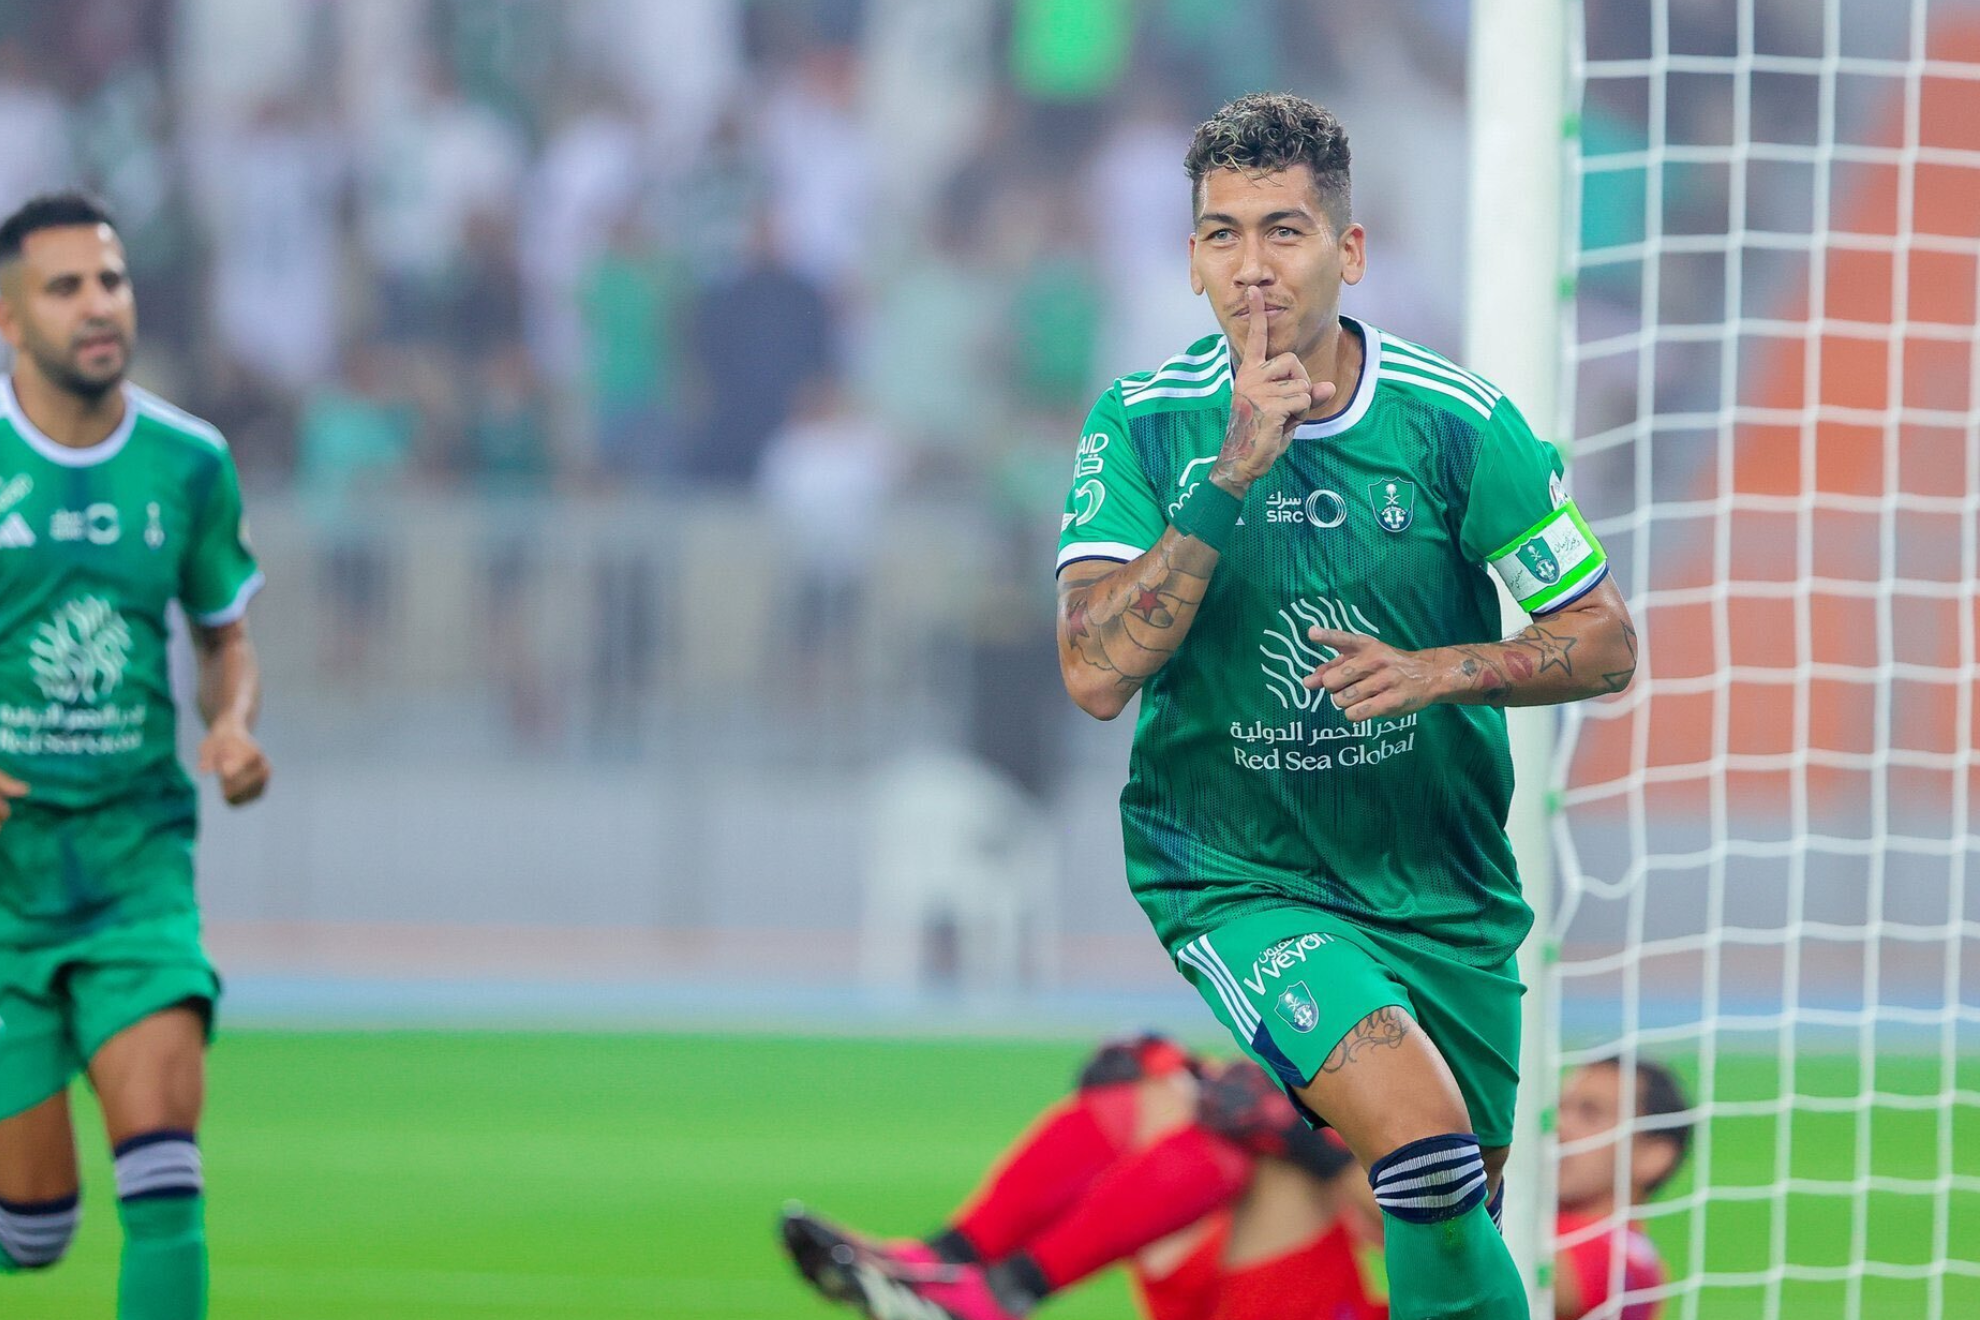 Al-Ahli 3-1 Al-Wehda | Ver online y gratis el partido completo